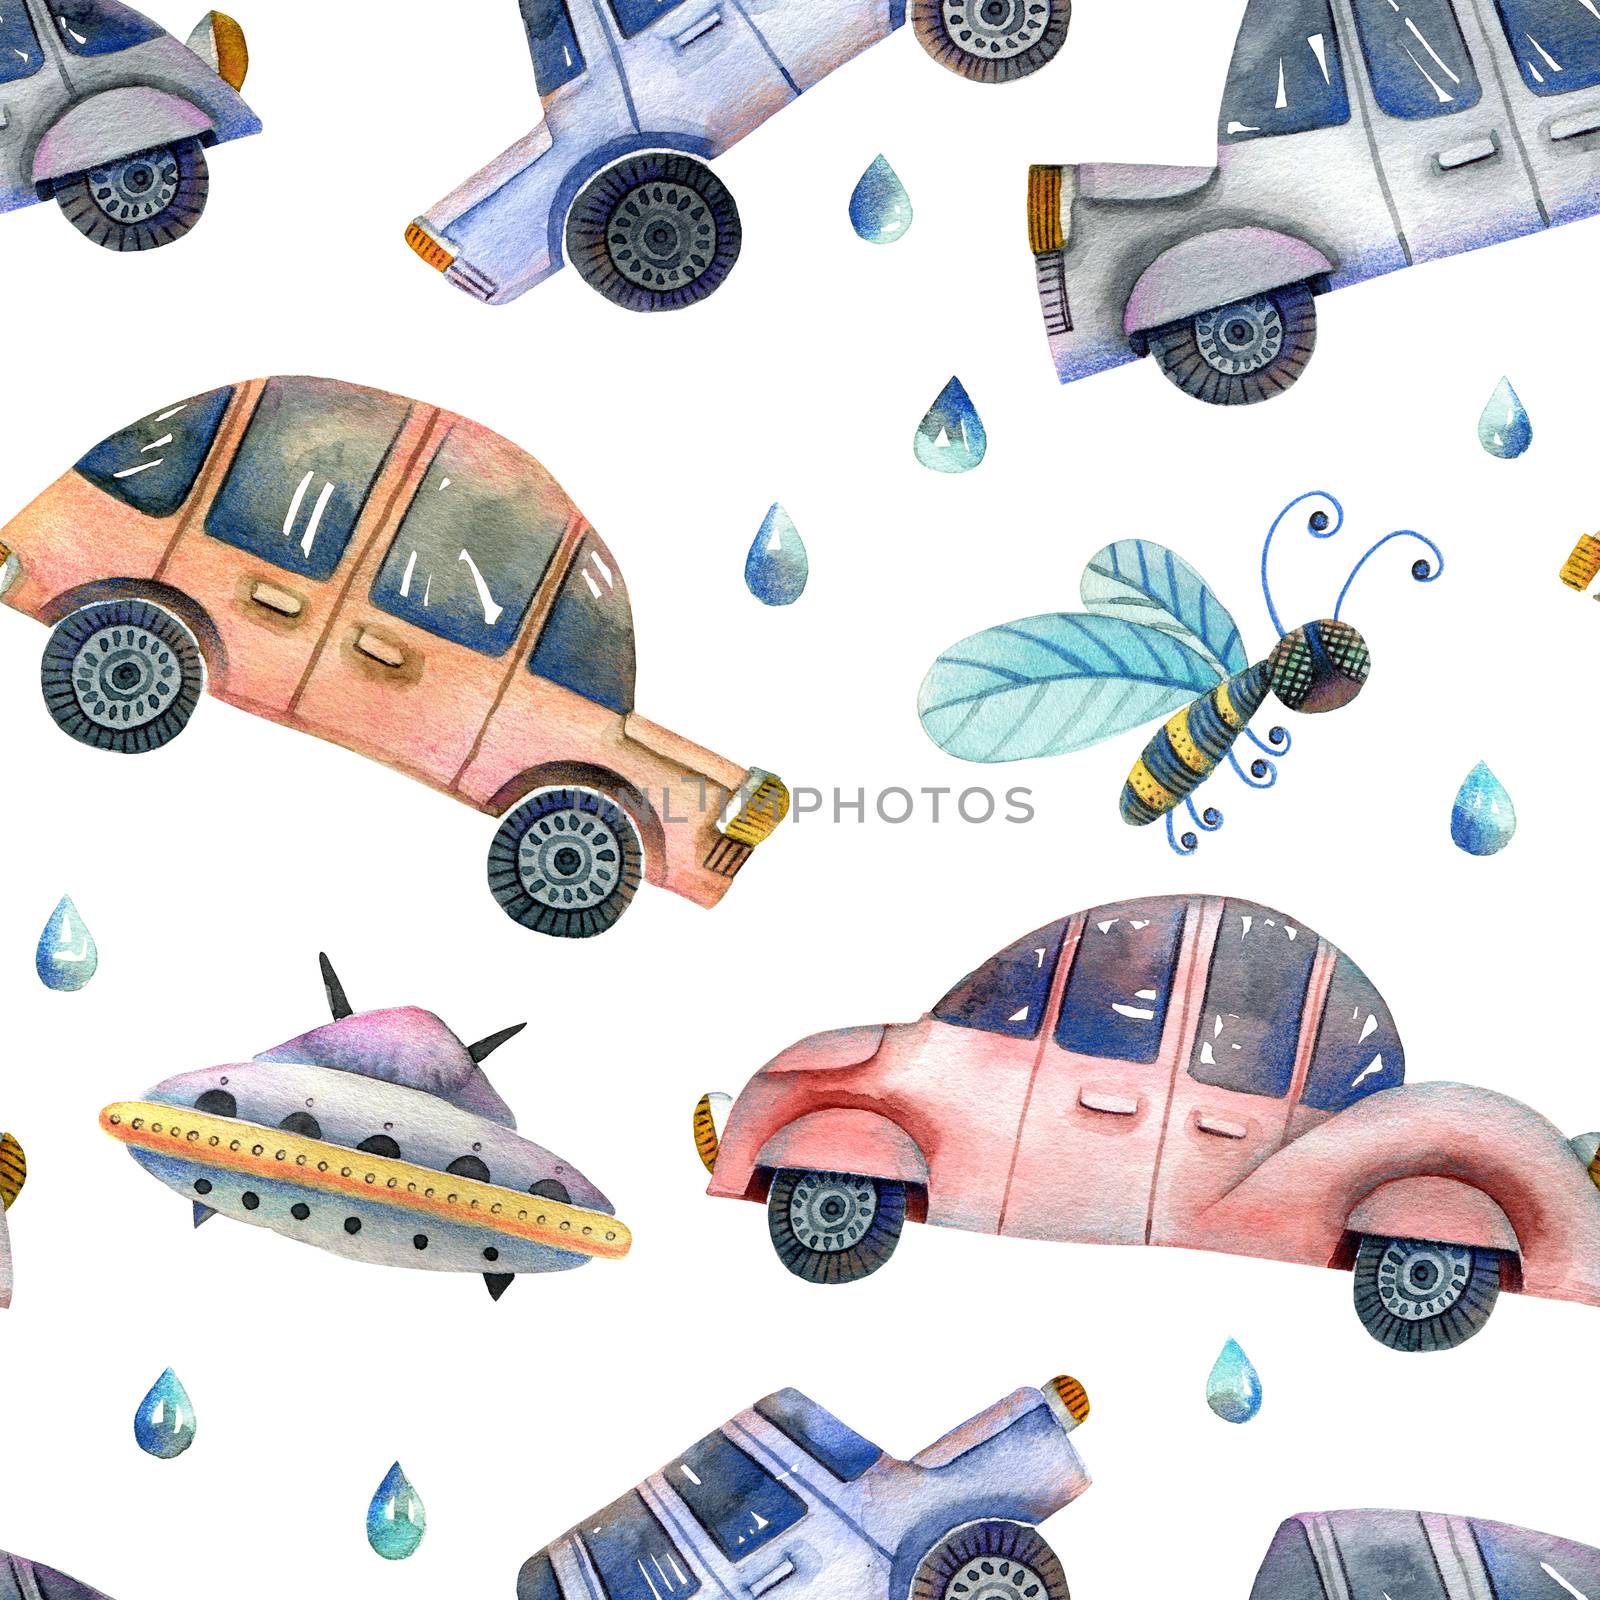 Moving cars illustration by Olatarakanova